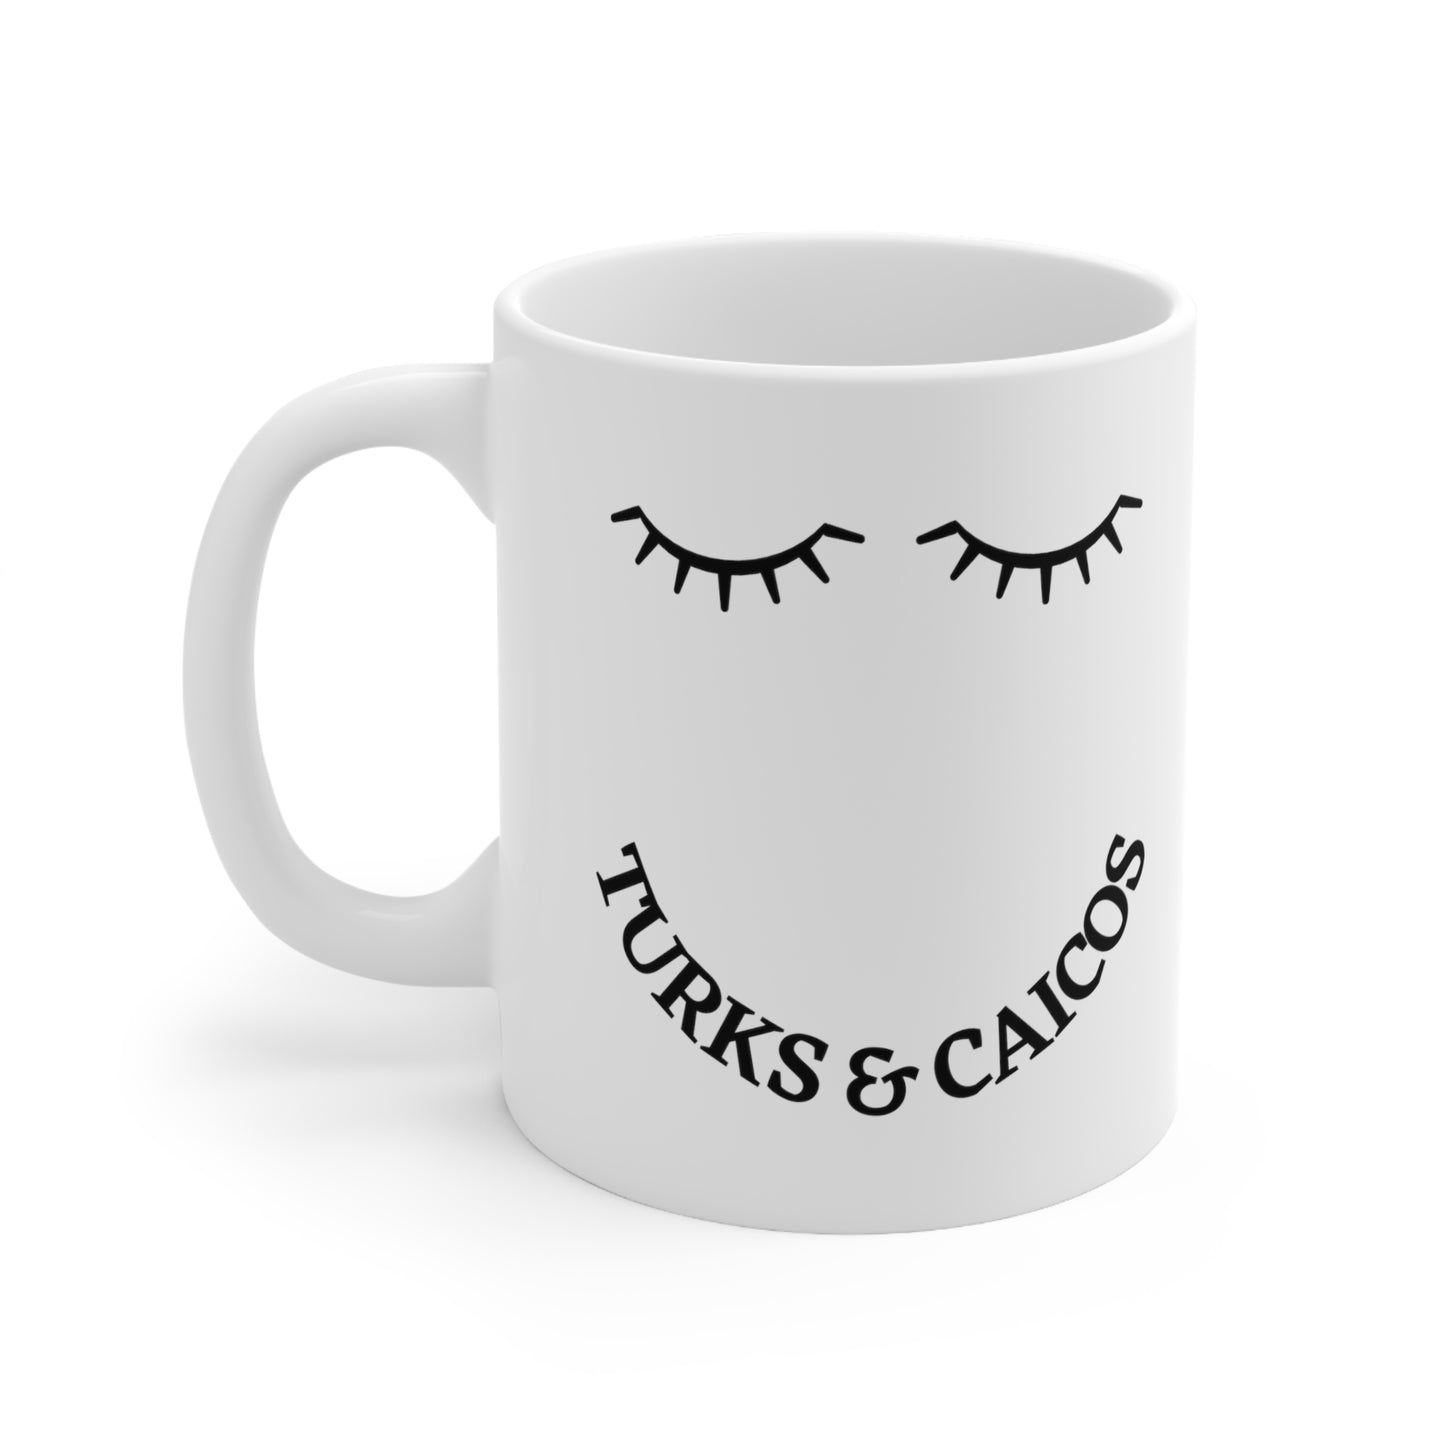 Turks & Caicos "Eyelash" Ceramic Mug 11oz